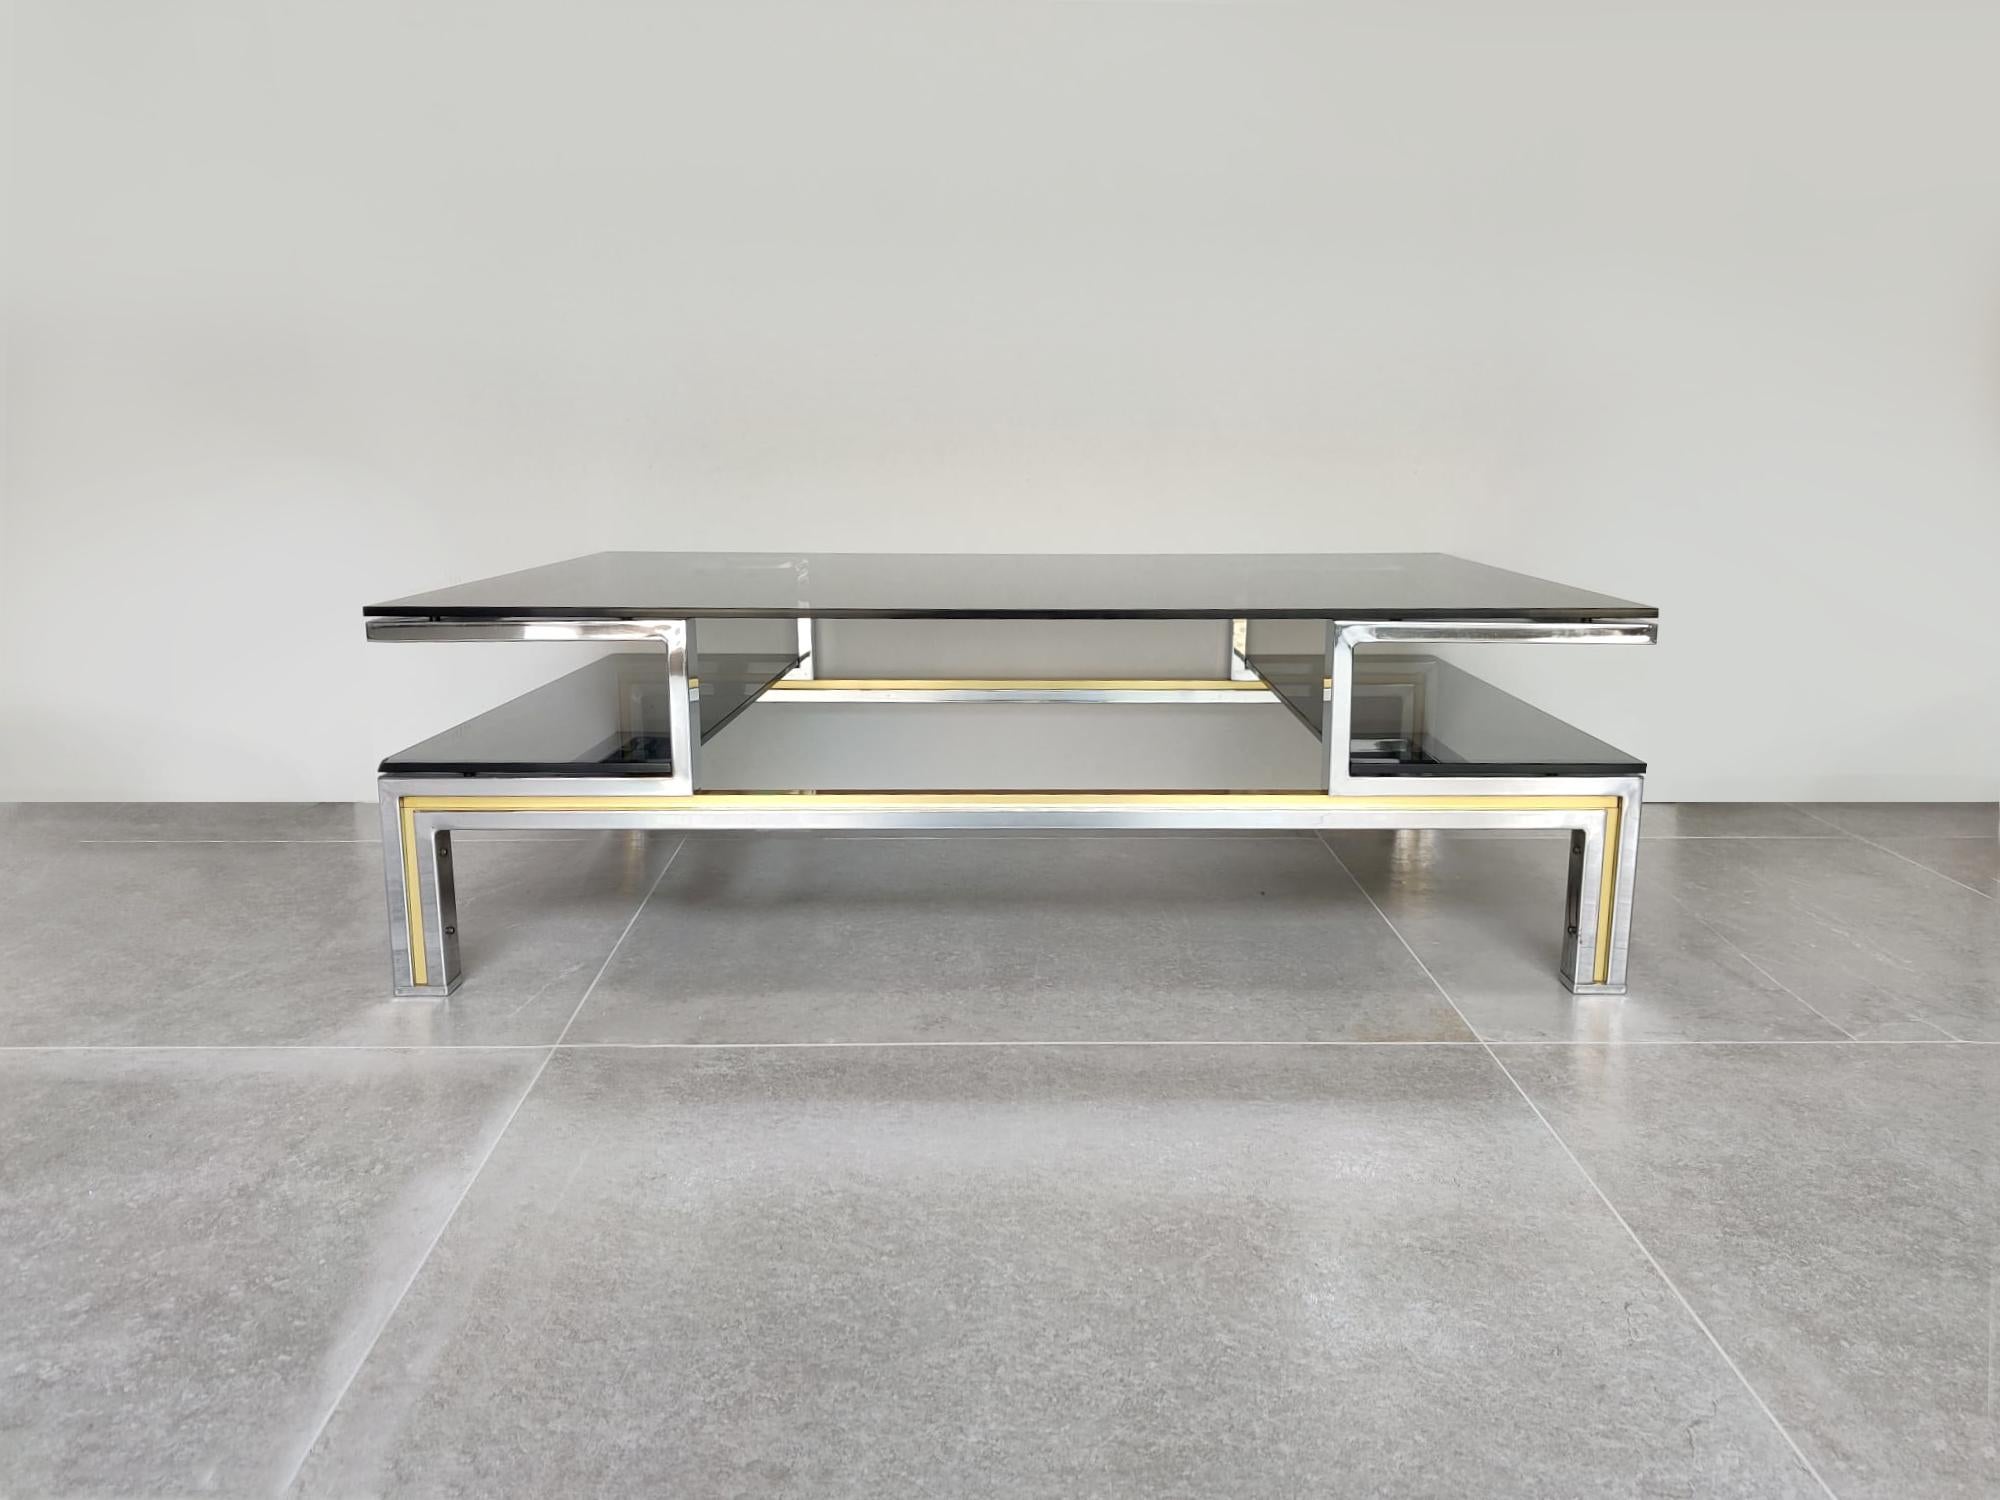 Spectaculaire table centrale en métal chromé et laiton, avec trois verres fumés attribués à la conception de Guy Lefevre pour Maison Jasen.